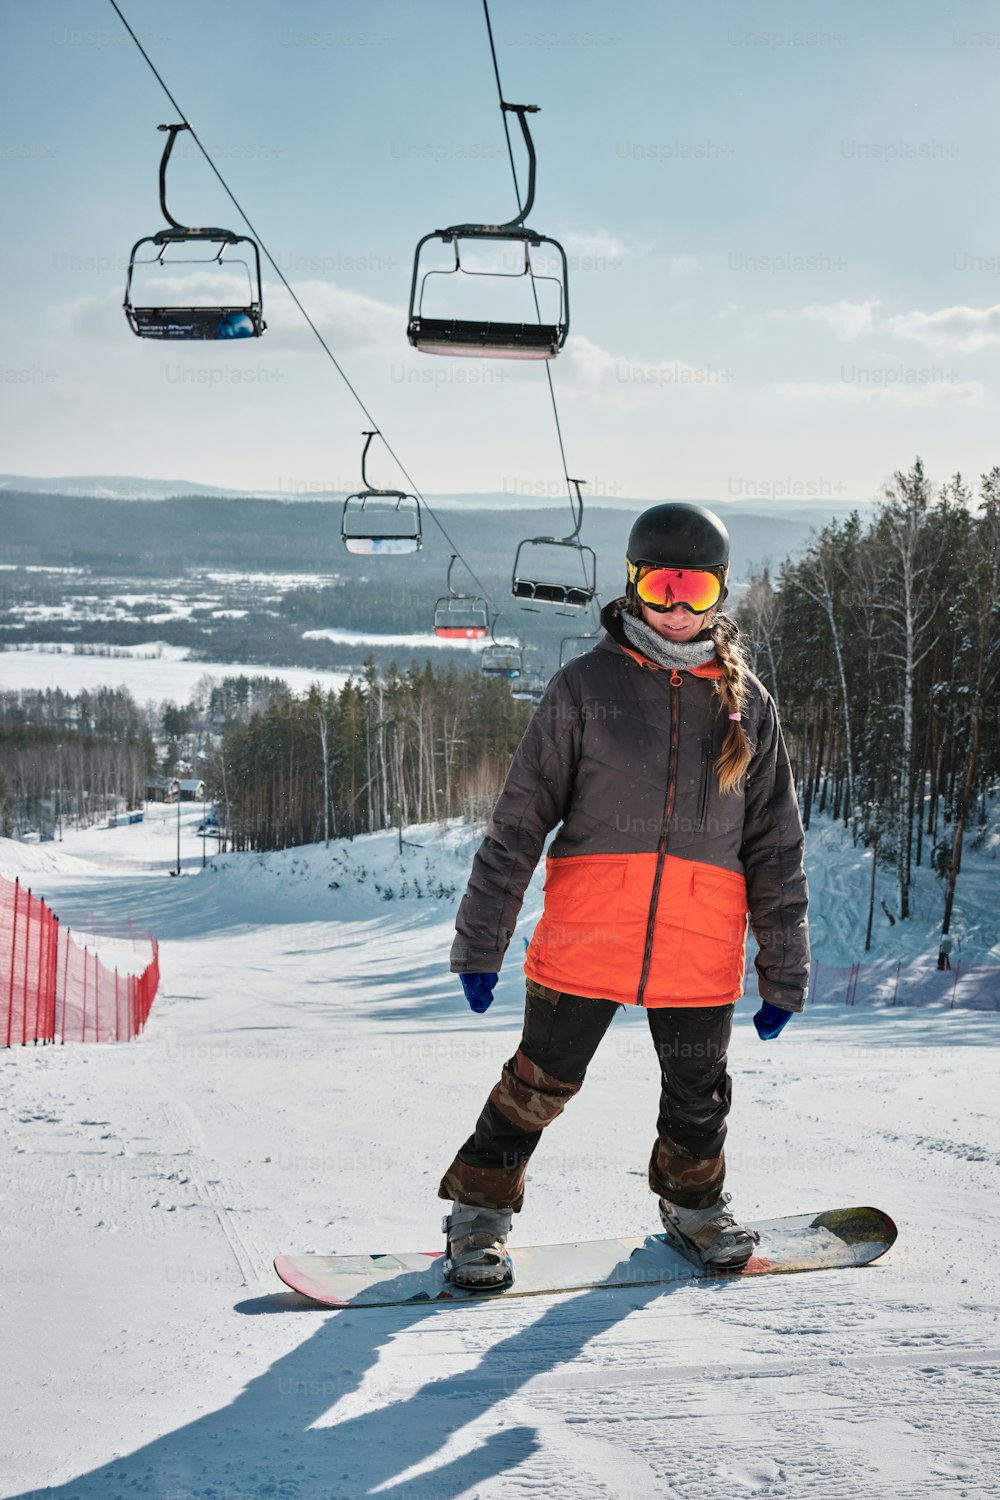 una persona montando una tabla de snowboard en una superficie nevada